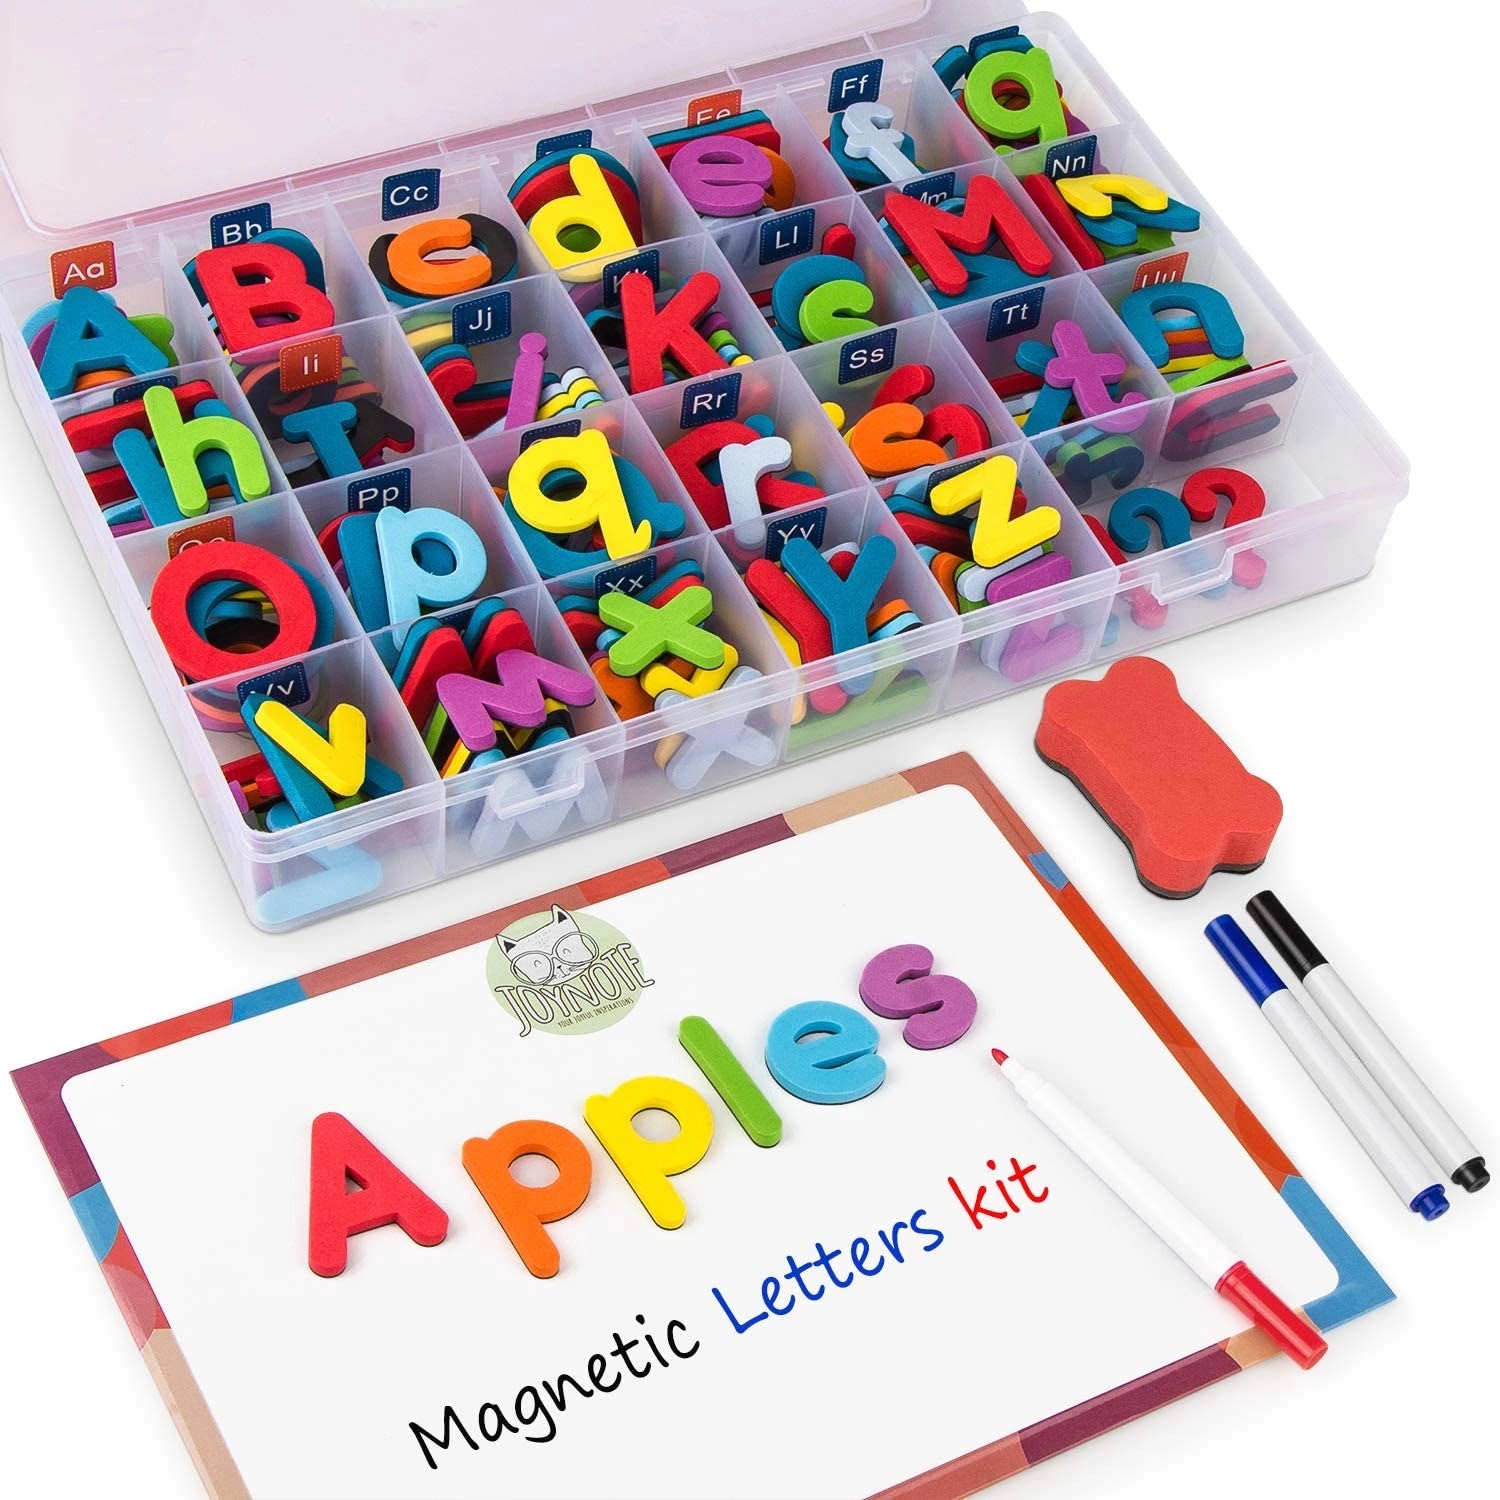 Jucarii 3+ - Set 253 piese cu litere alfabet magnetice, 1 tabla magnetica cu doua fete si cutie de depozitare, jucarii educative pentru copii de 3+ ani, buz.ro